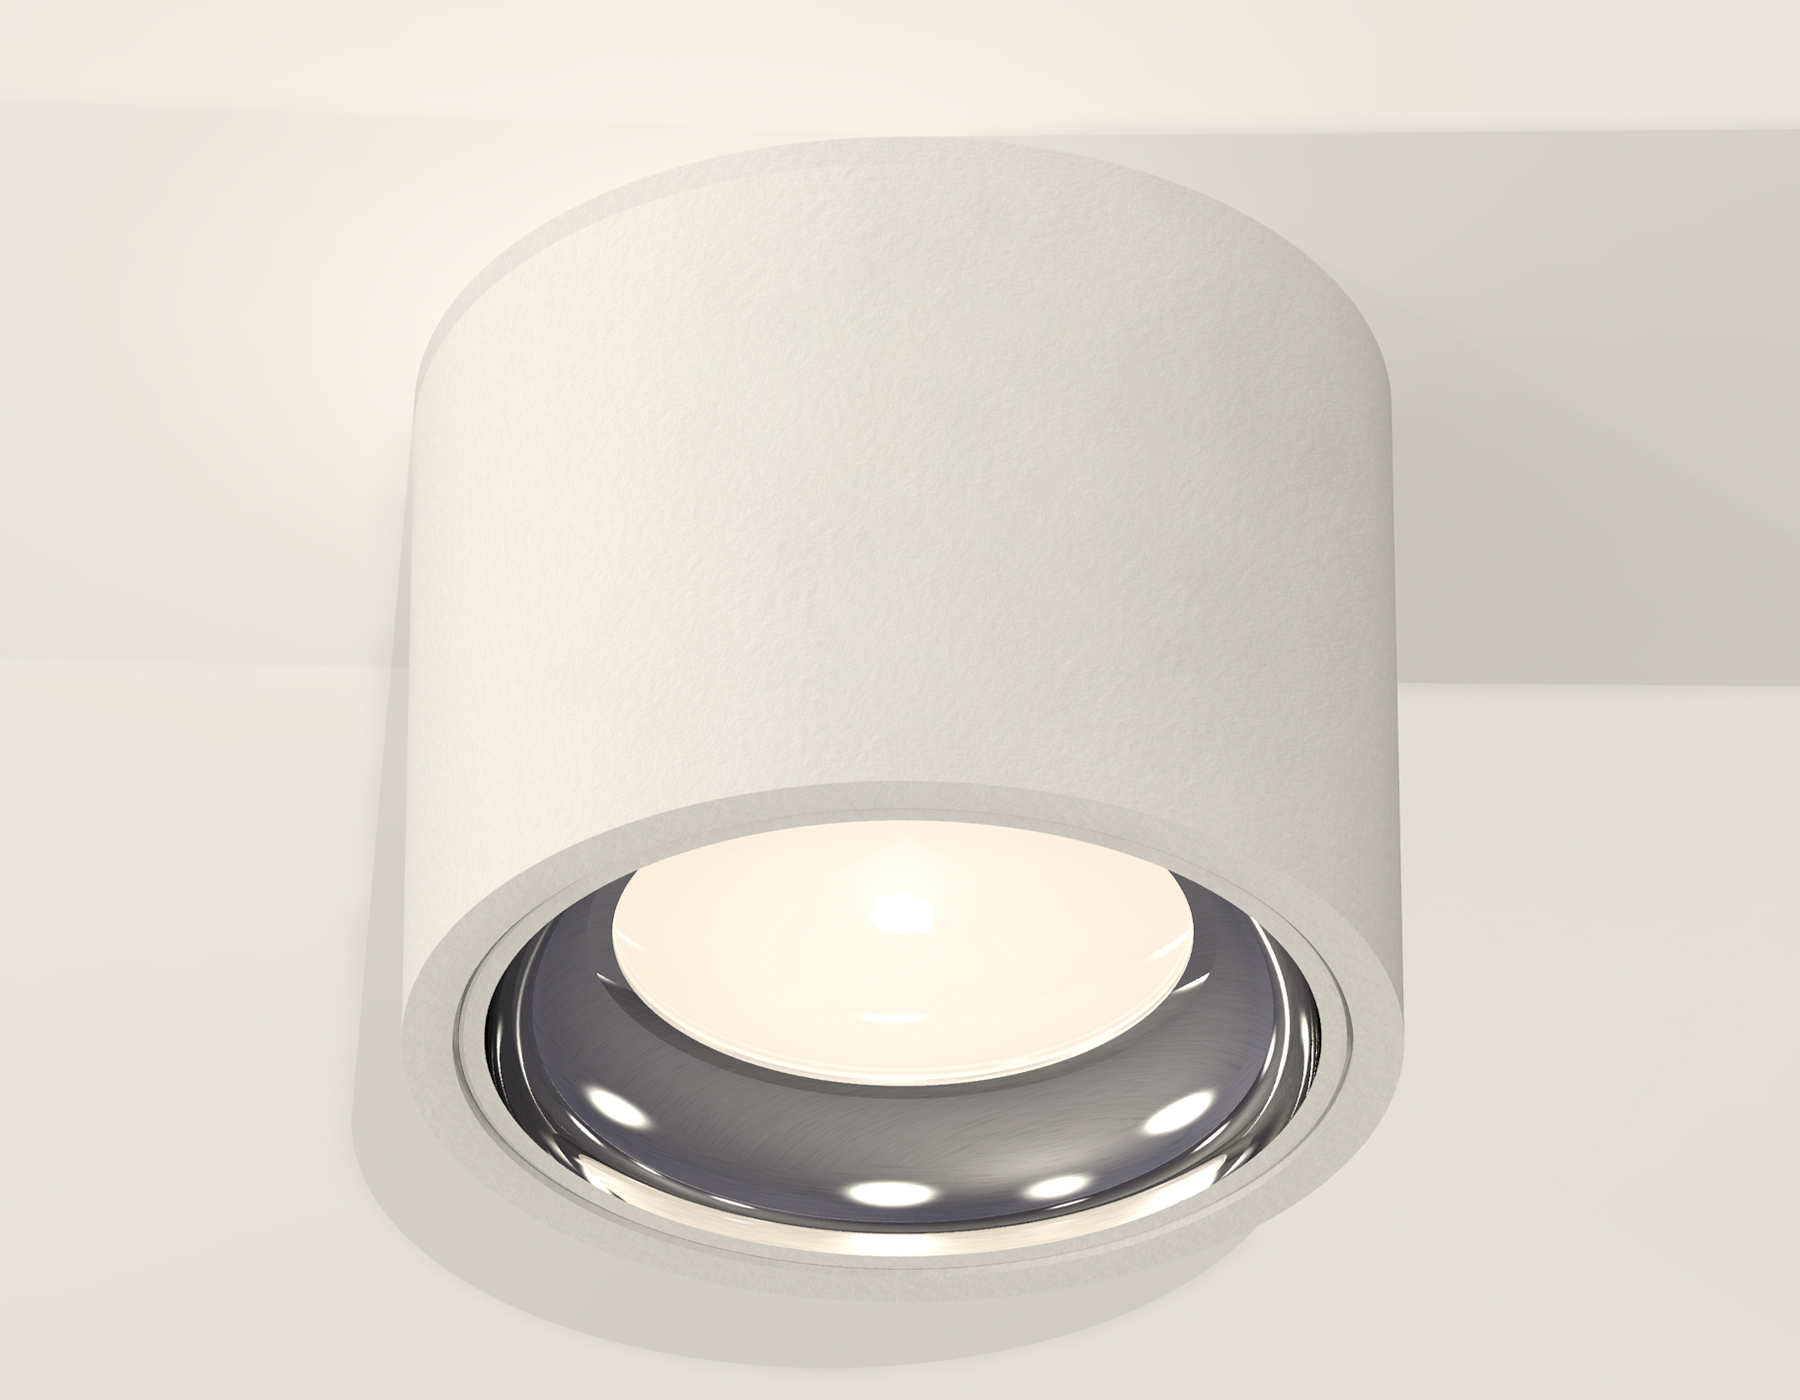 Потолочный светильник Ambrella Light Techno Spot XS7510011 (C7510, N7022) в #REGION_NAME_DECLINE_PP#